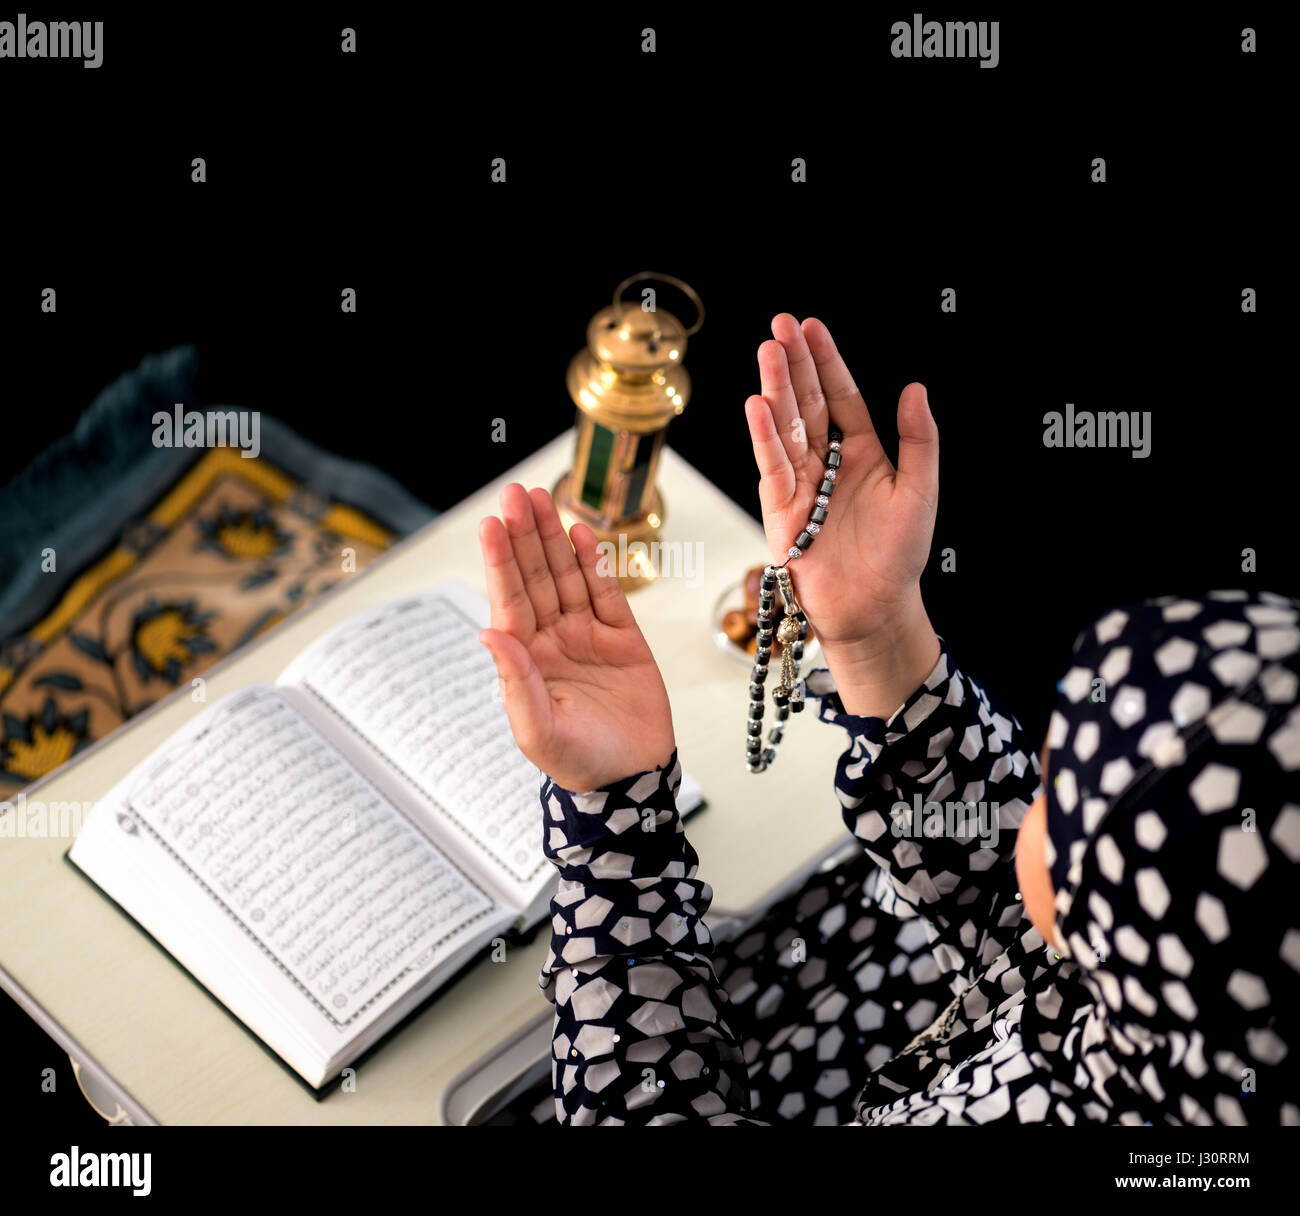 Chica musulmana levantando las manos para la oración sobre fondo negro Foto de stock